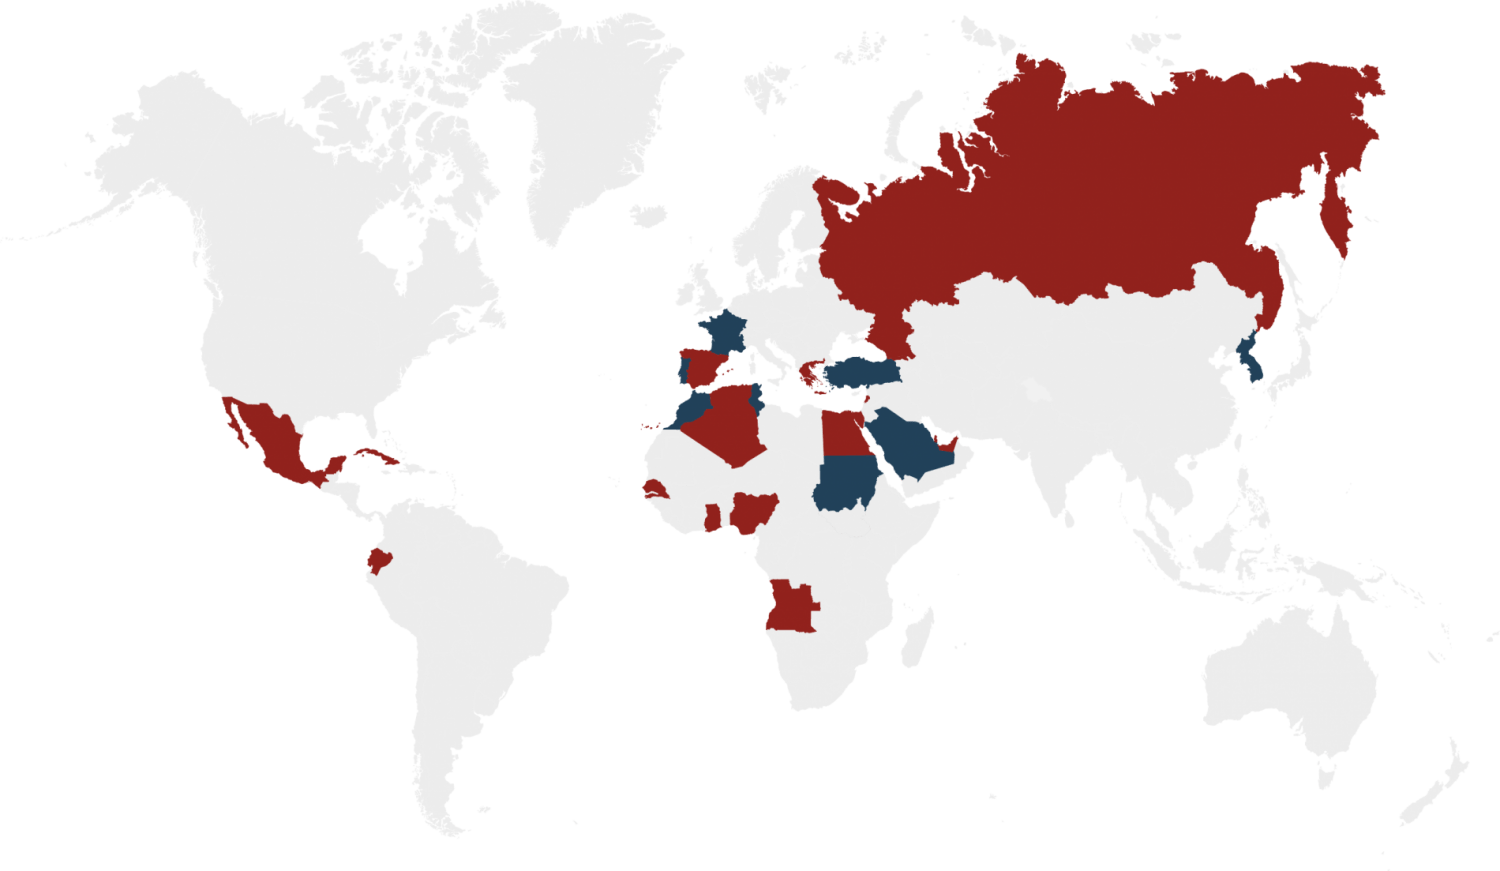 imagen de mapa indicando países con presencia internacional de fábricas de alimentación animal